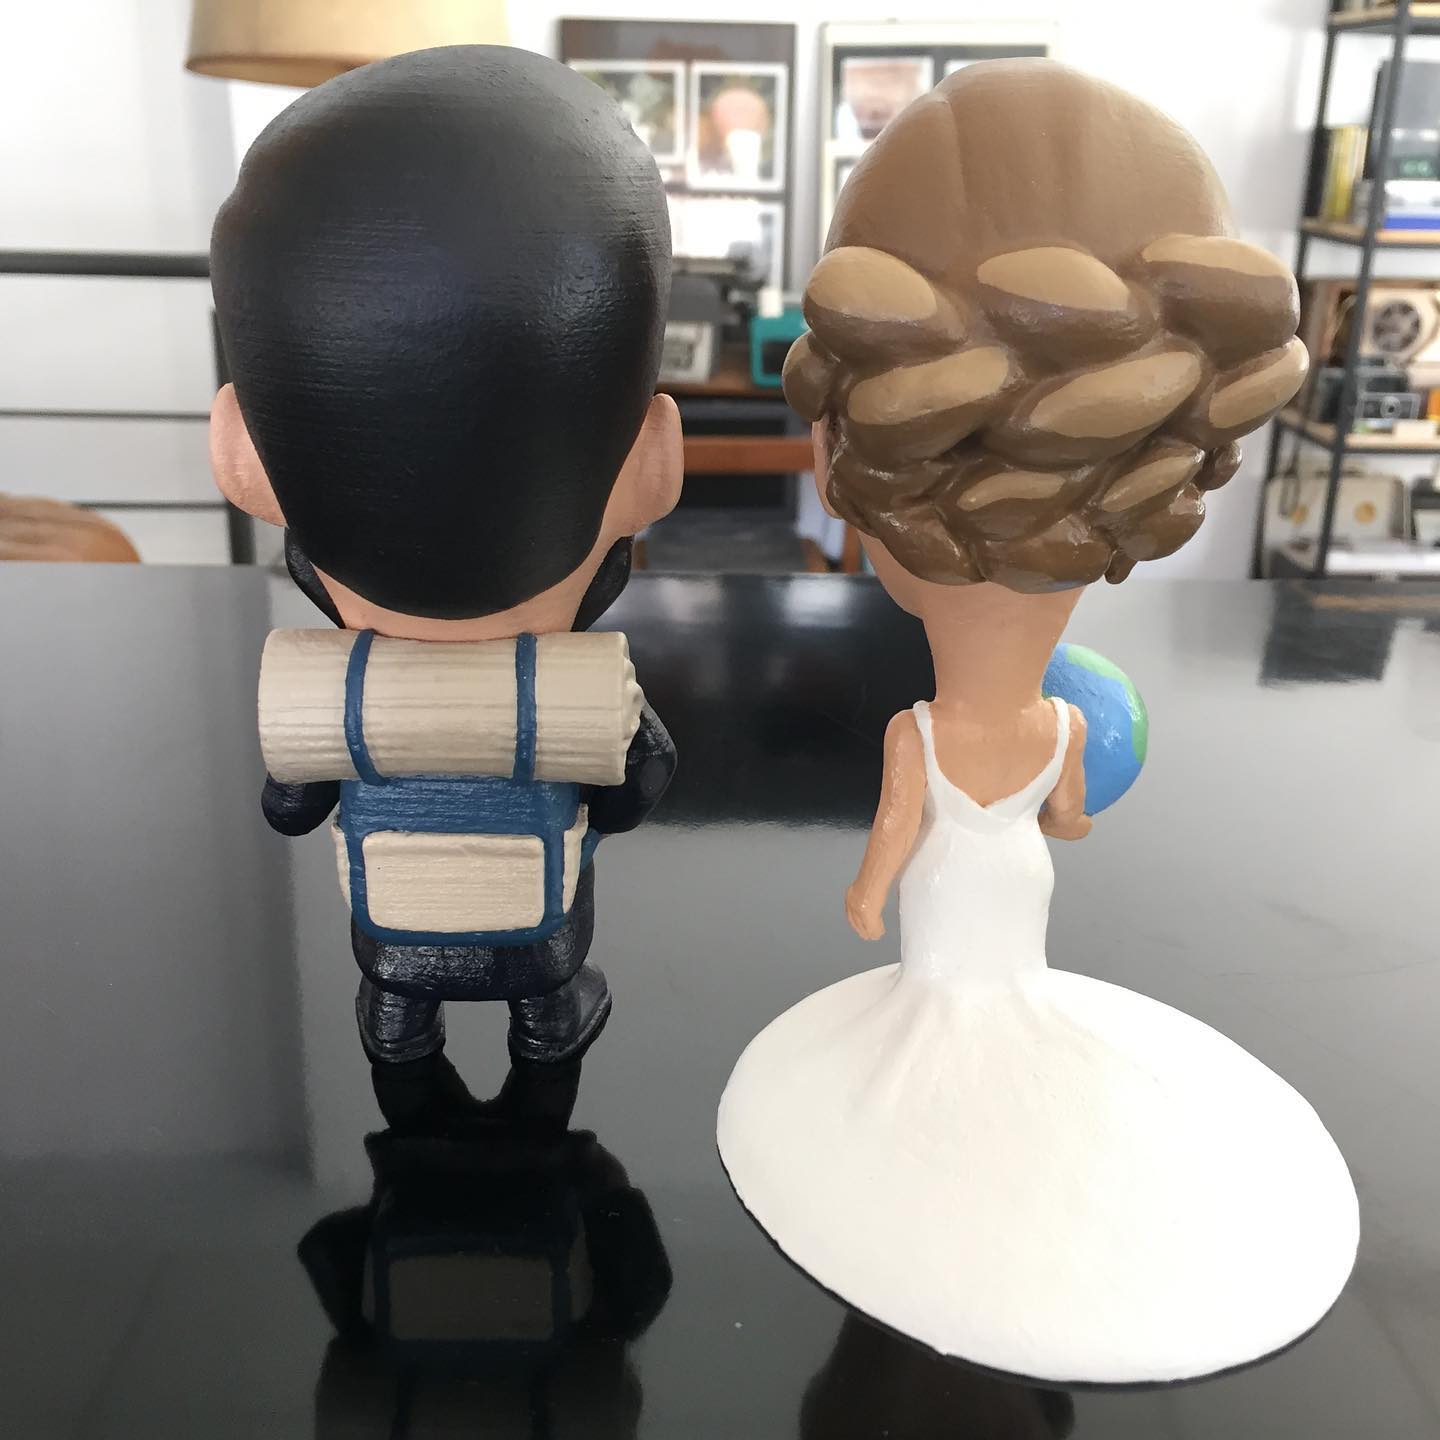 Matrimonio Figura personalizada 3D